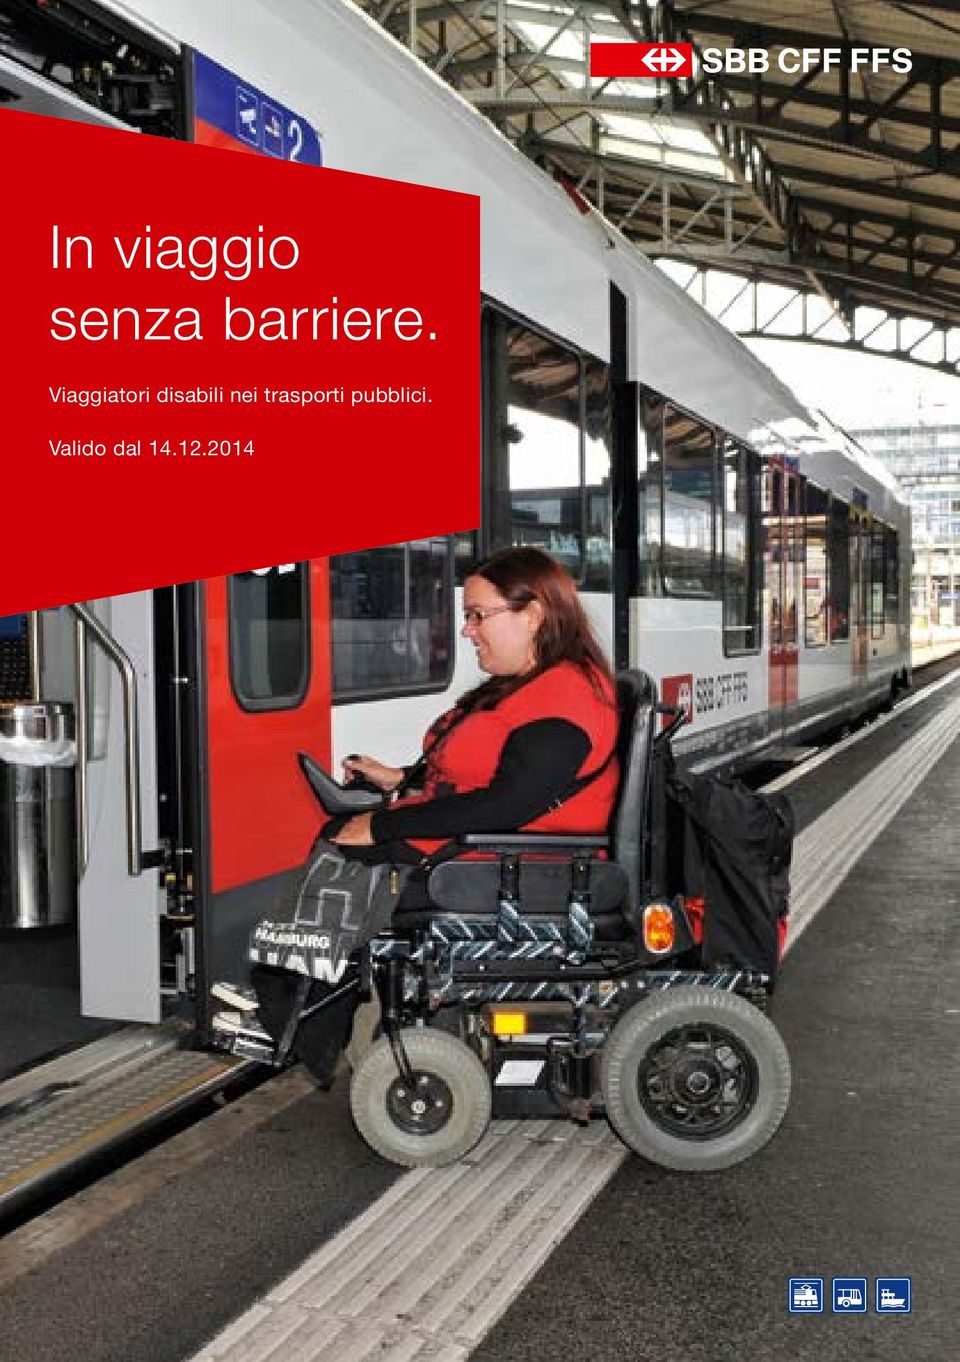 Viaggiatori disabili